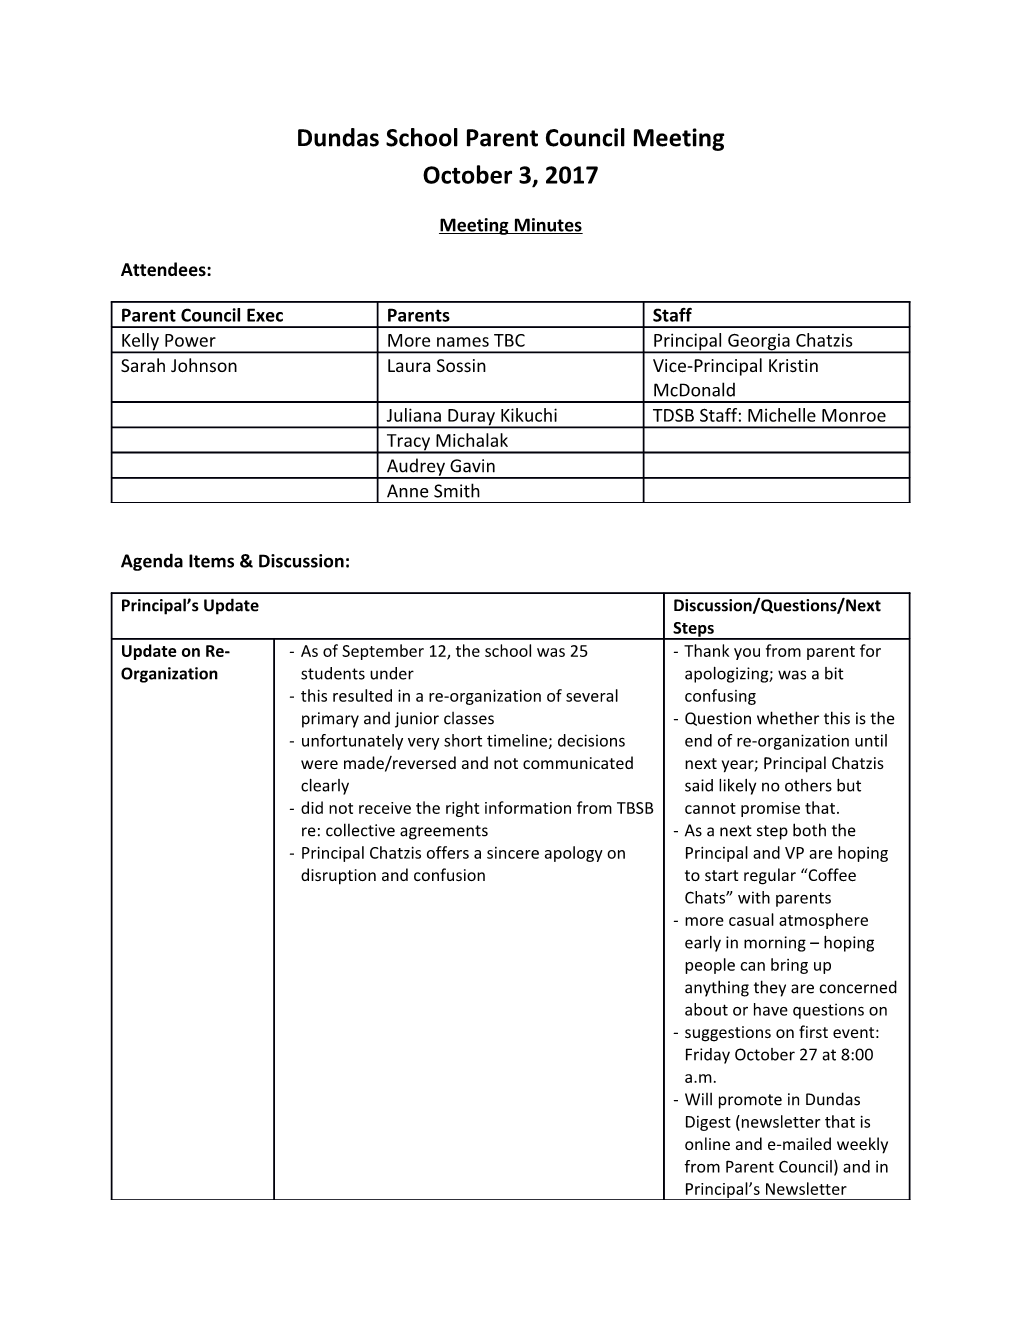 Agenda Items & Discussion